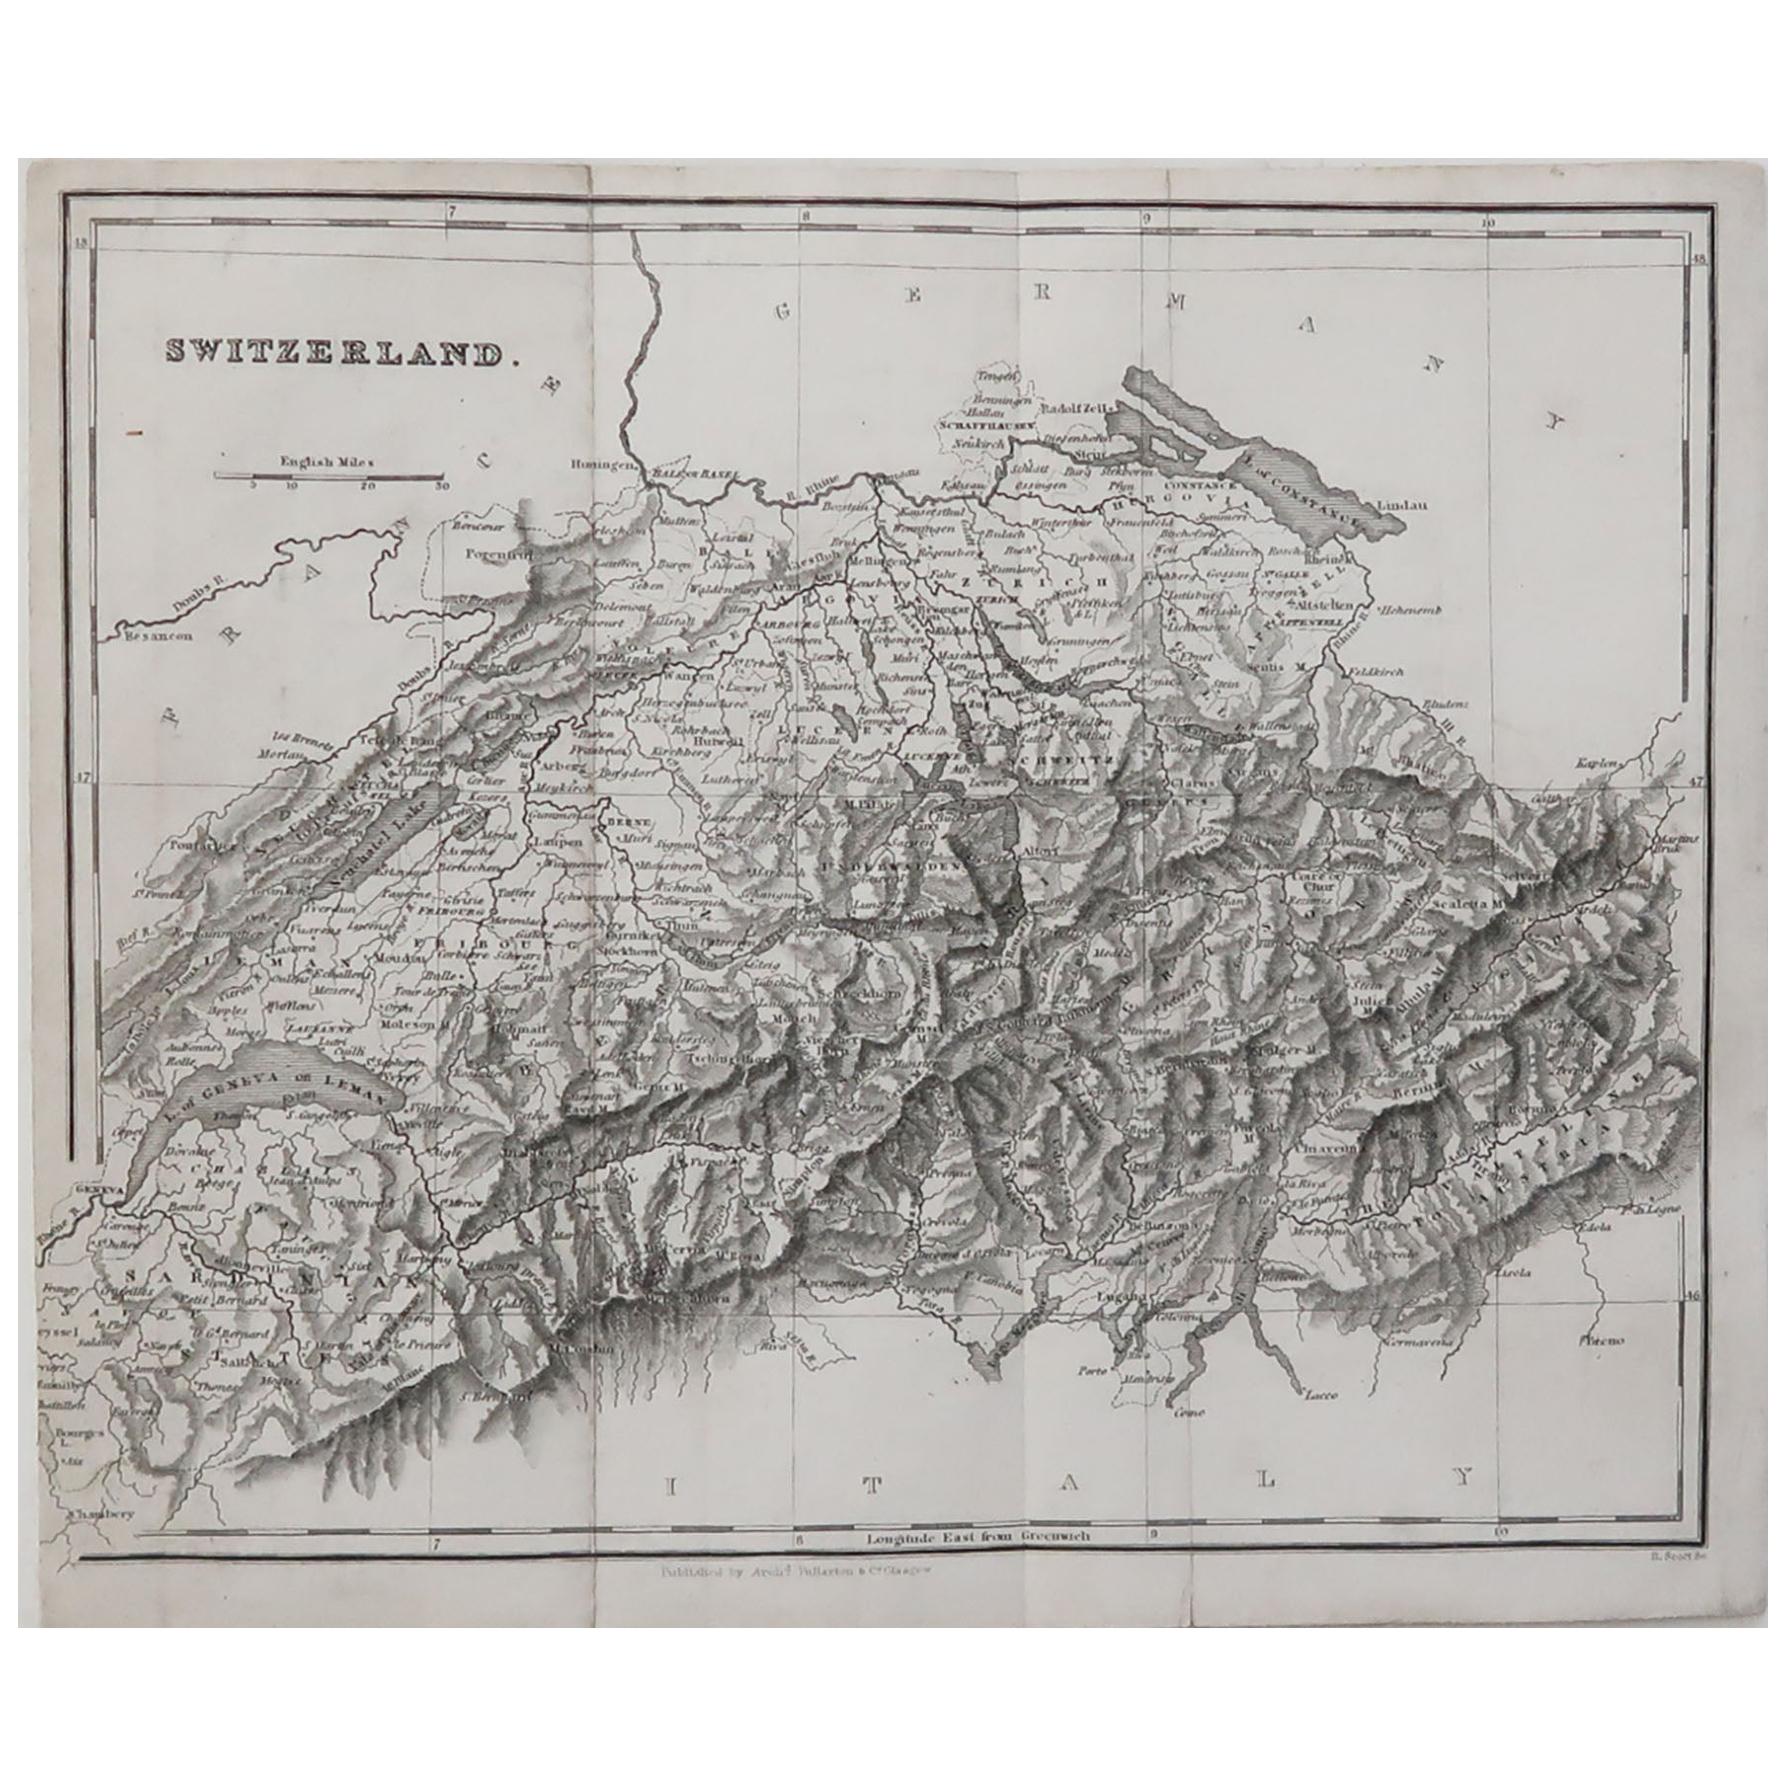 Original Antique Map of Switzerland, circa 1840